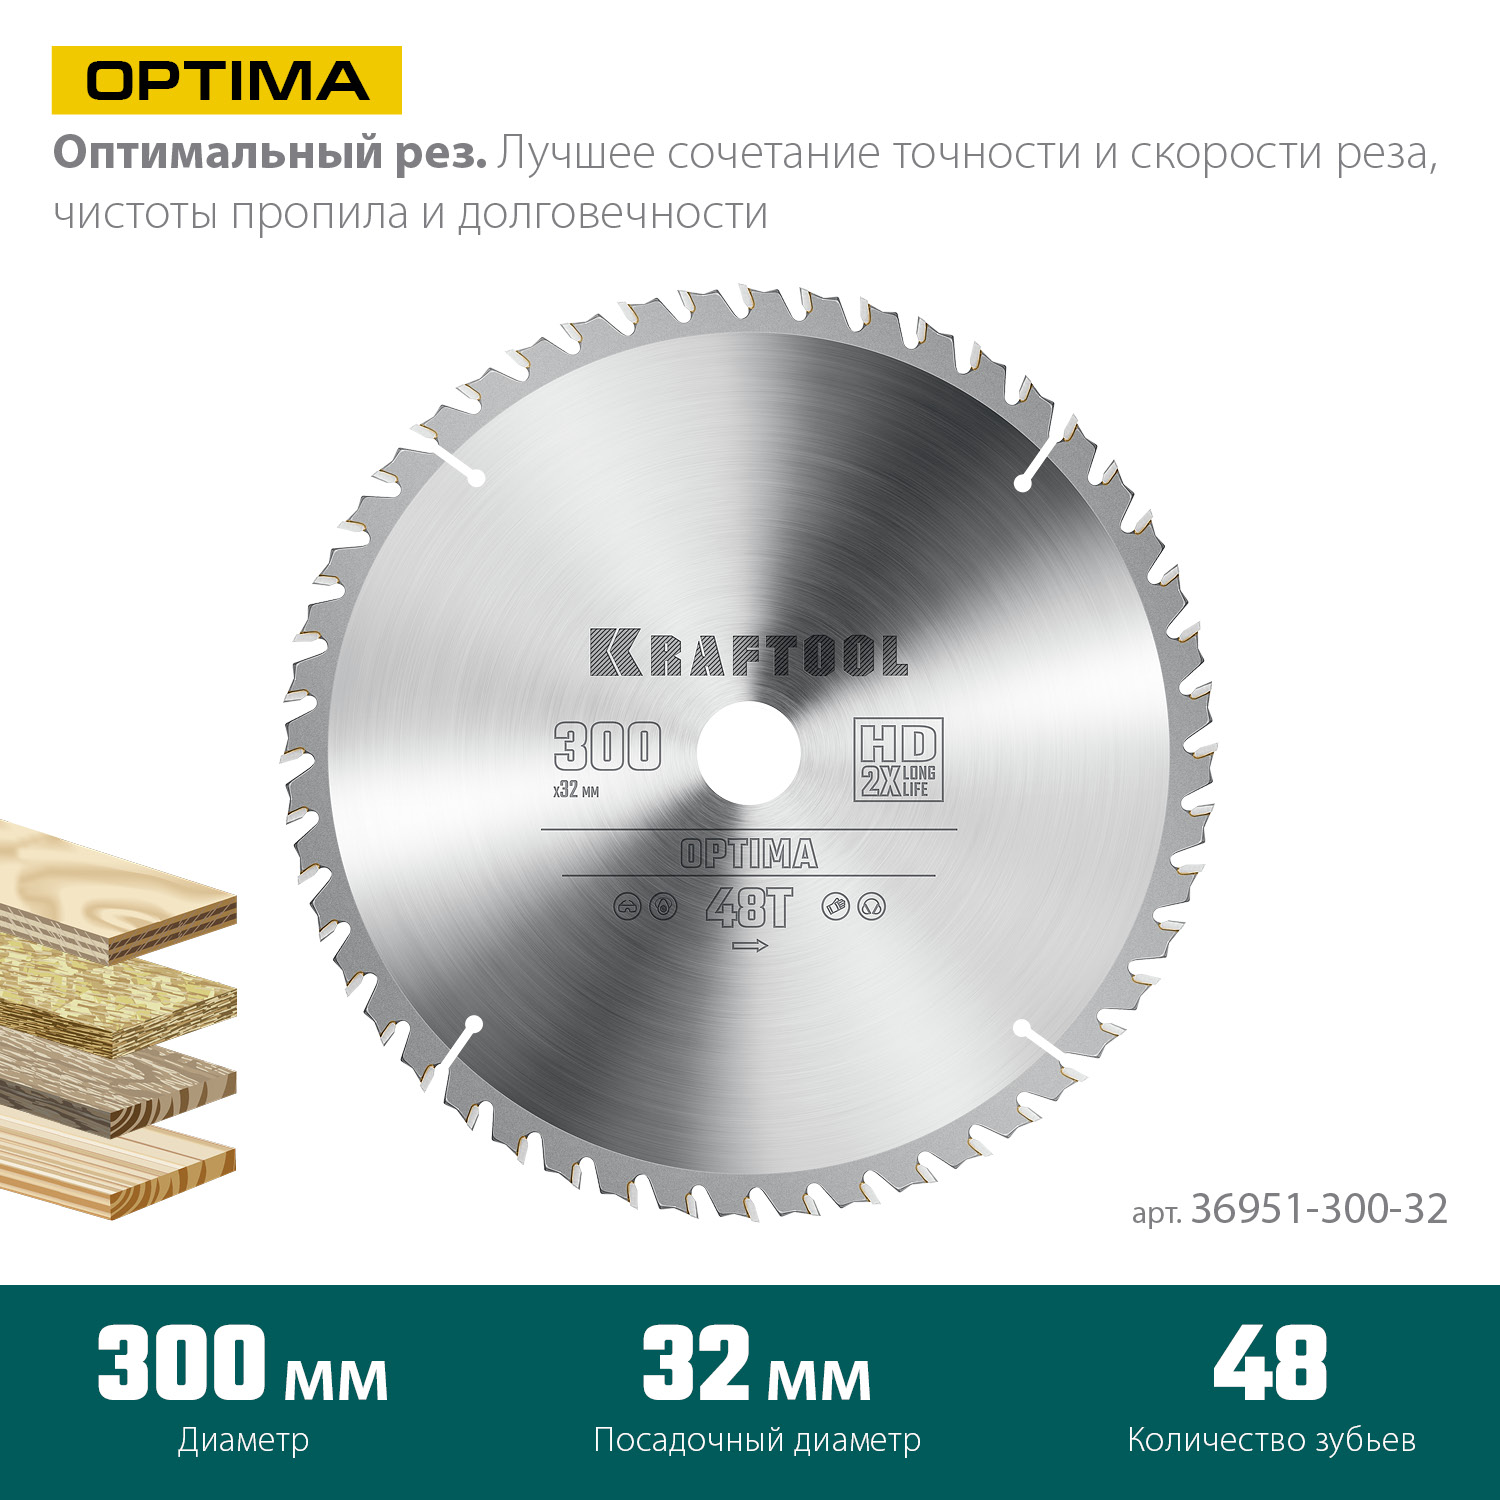 KRAFTOOL Optima, 300 х 32 мм, 48Т, пильный диск по дереву (36951-300-32)